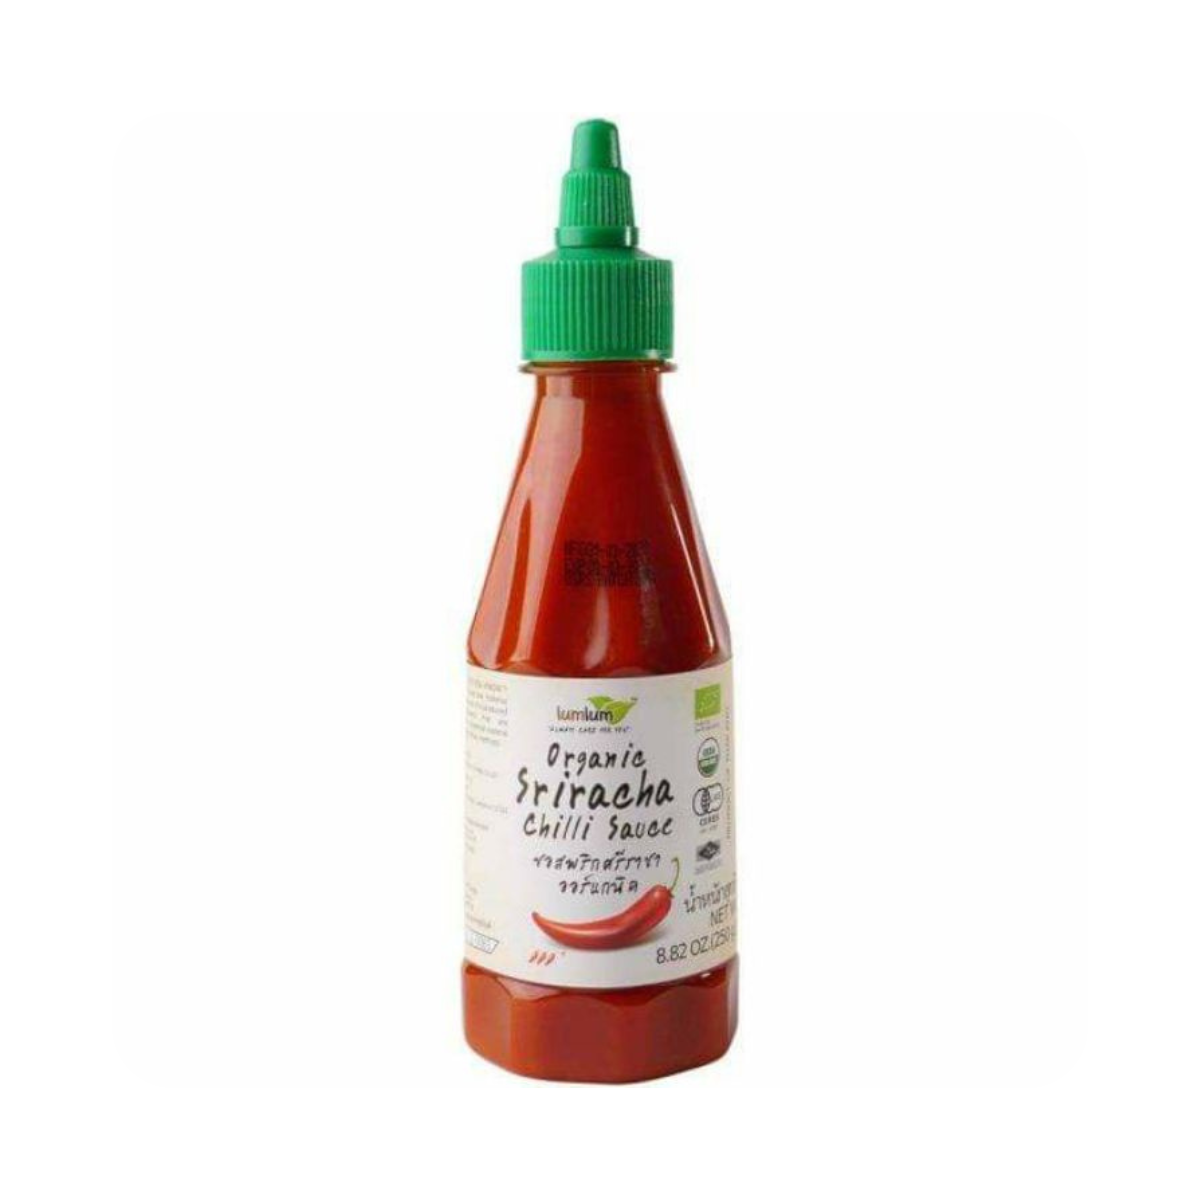 Organic Sriracha Hot Chili Sauce - lumlum